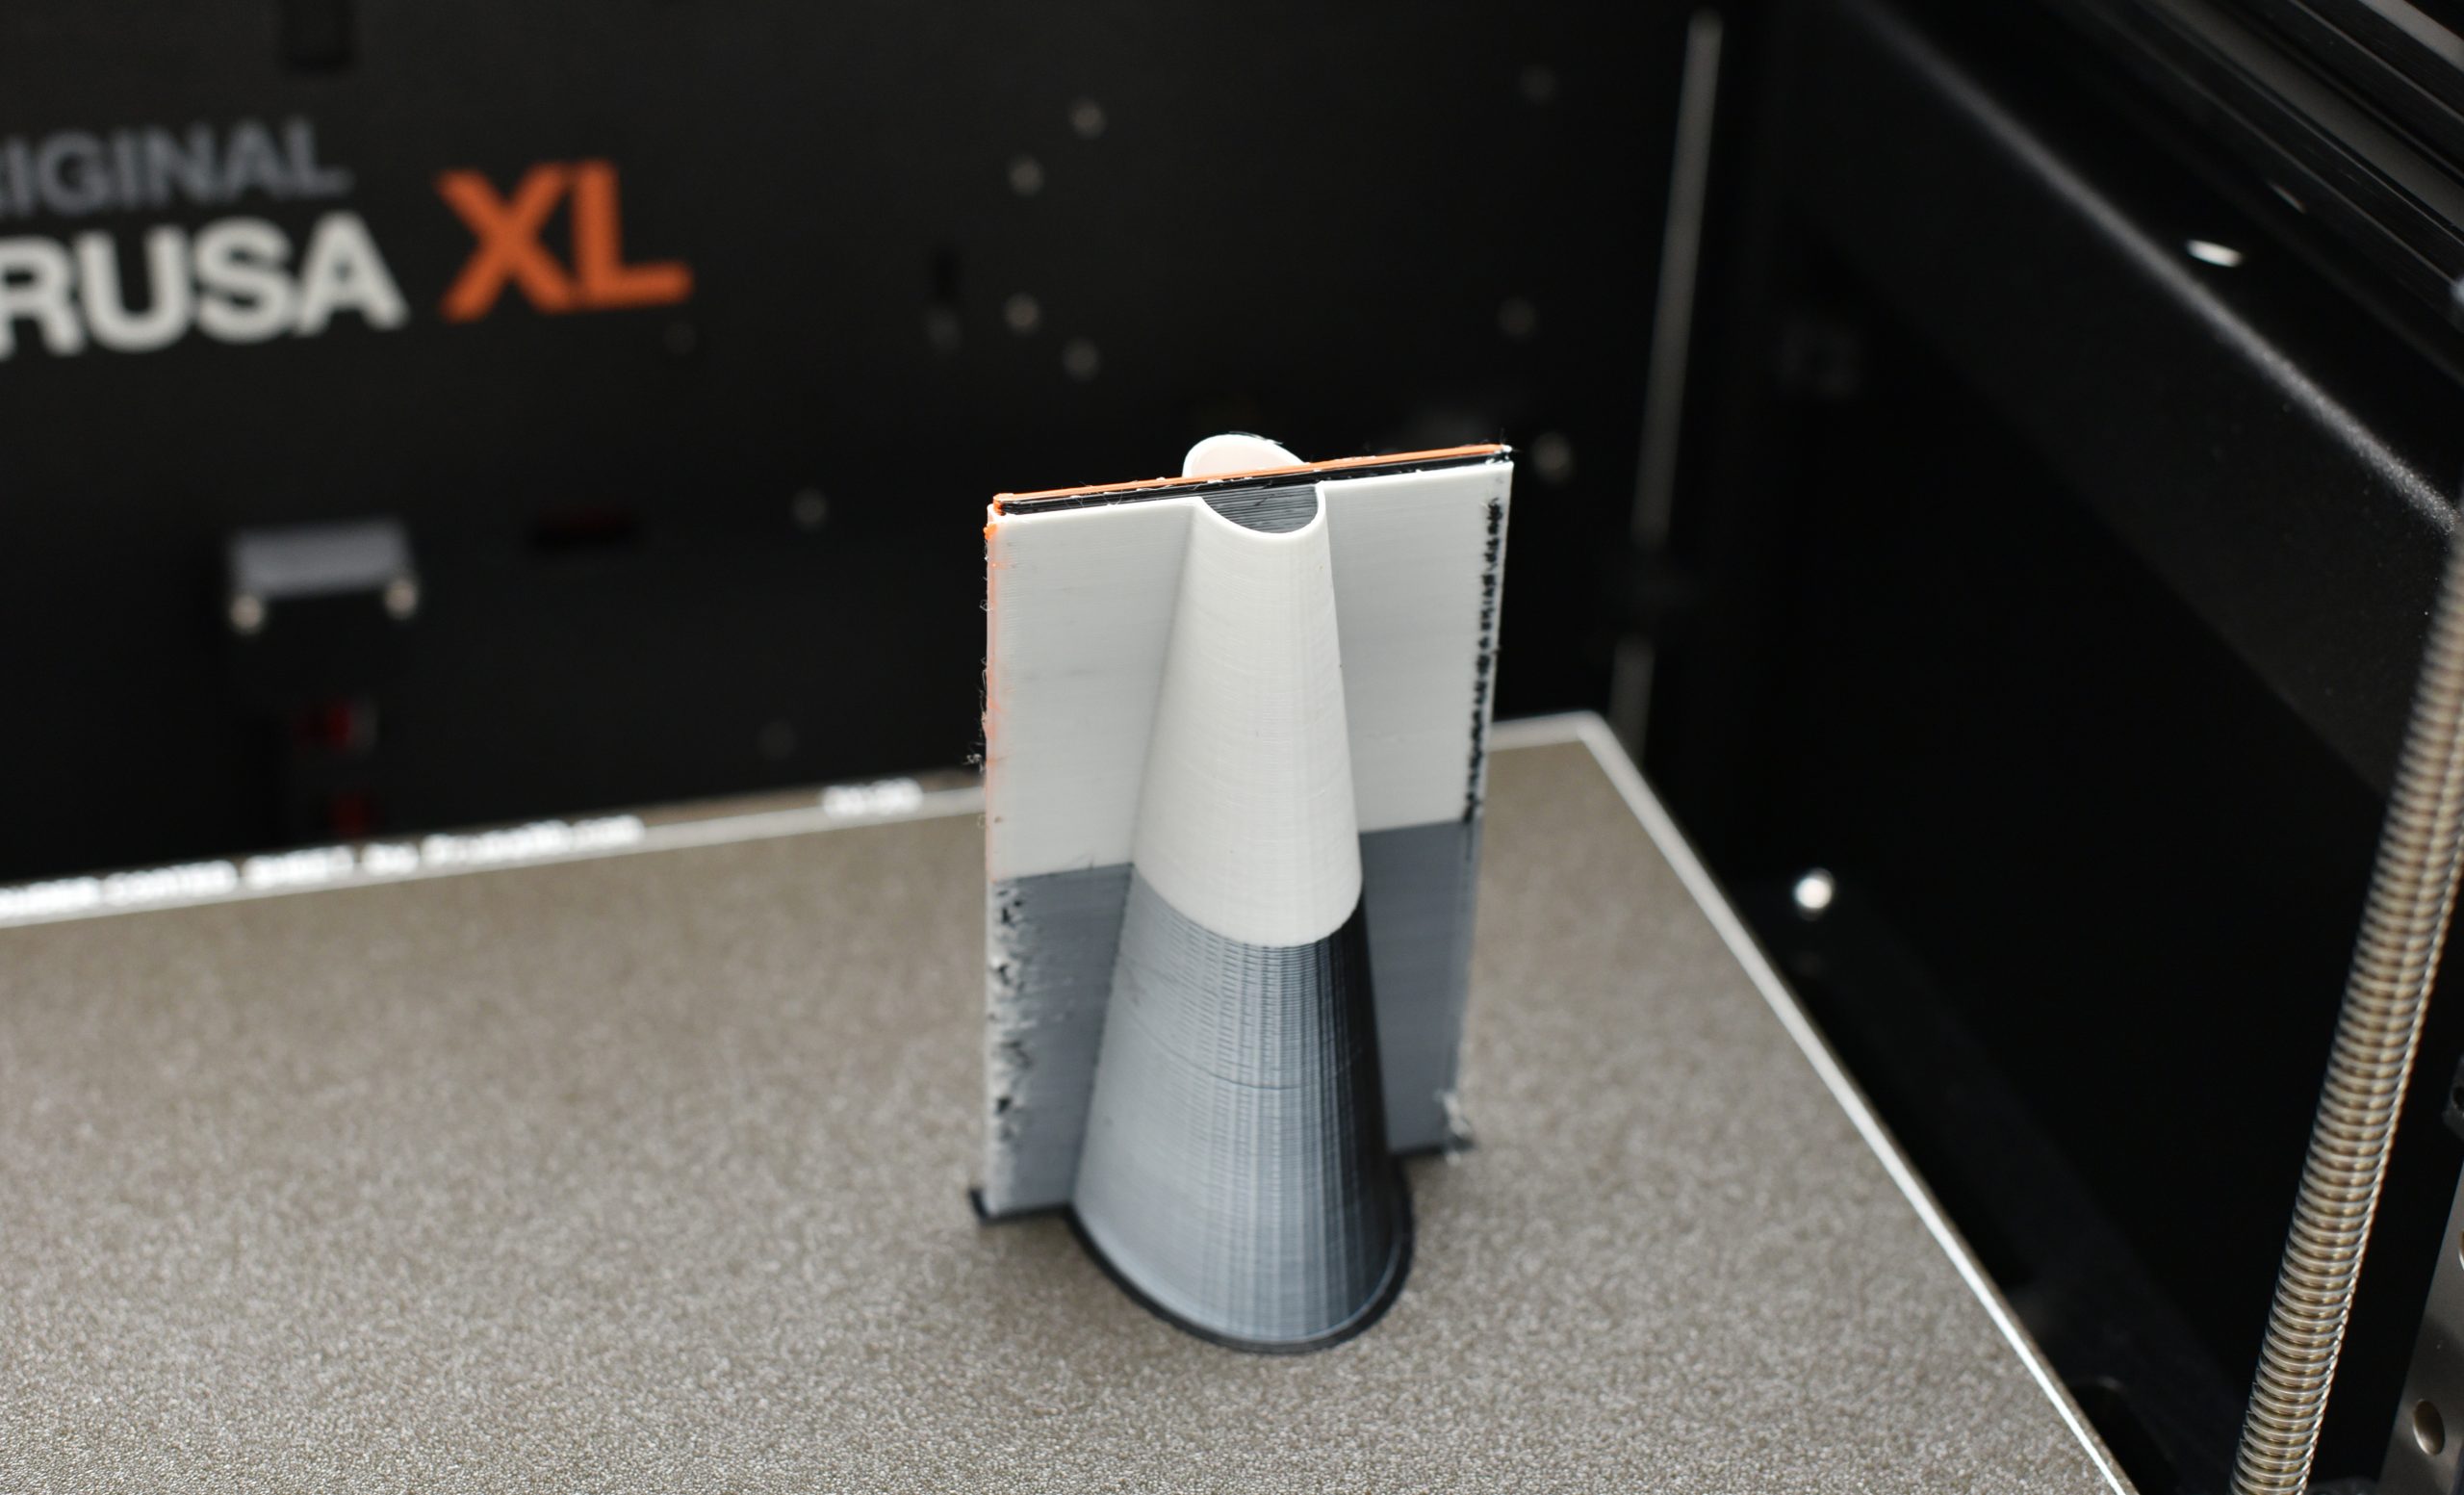 Lissage - Rendez les surfaces supérieures super lisses avec PrusaSlicer 2.3  (RC) - Original Prusa 3D Printers